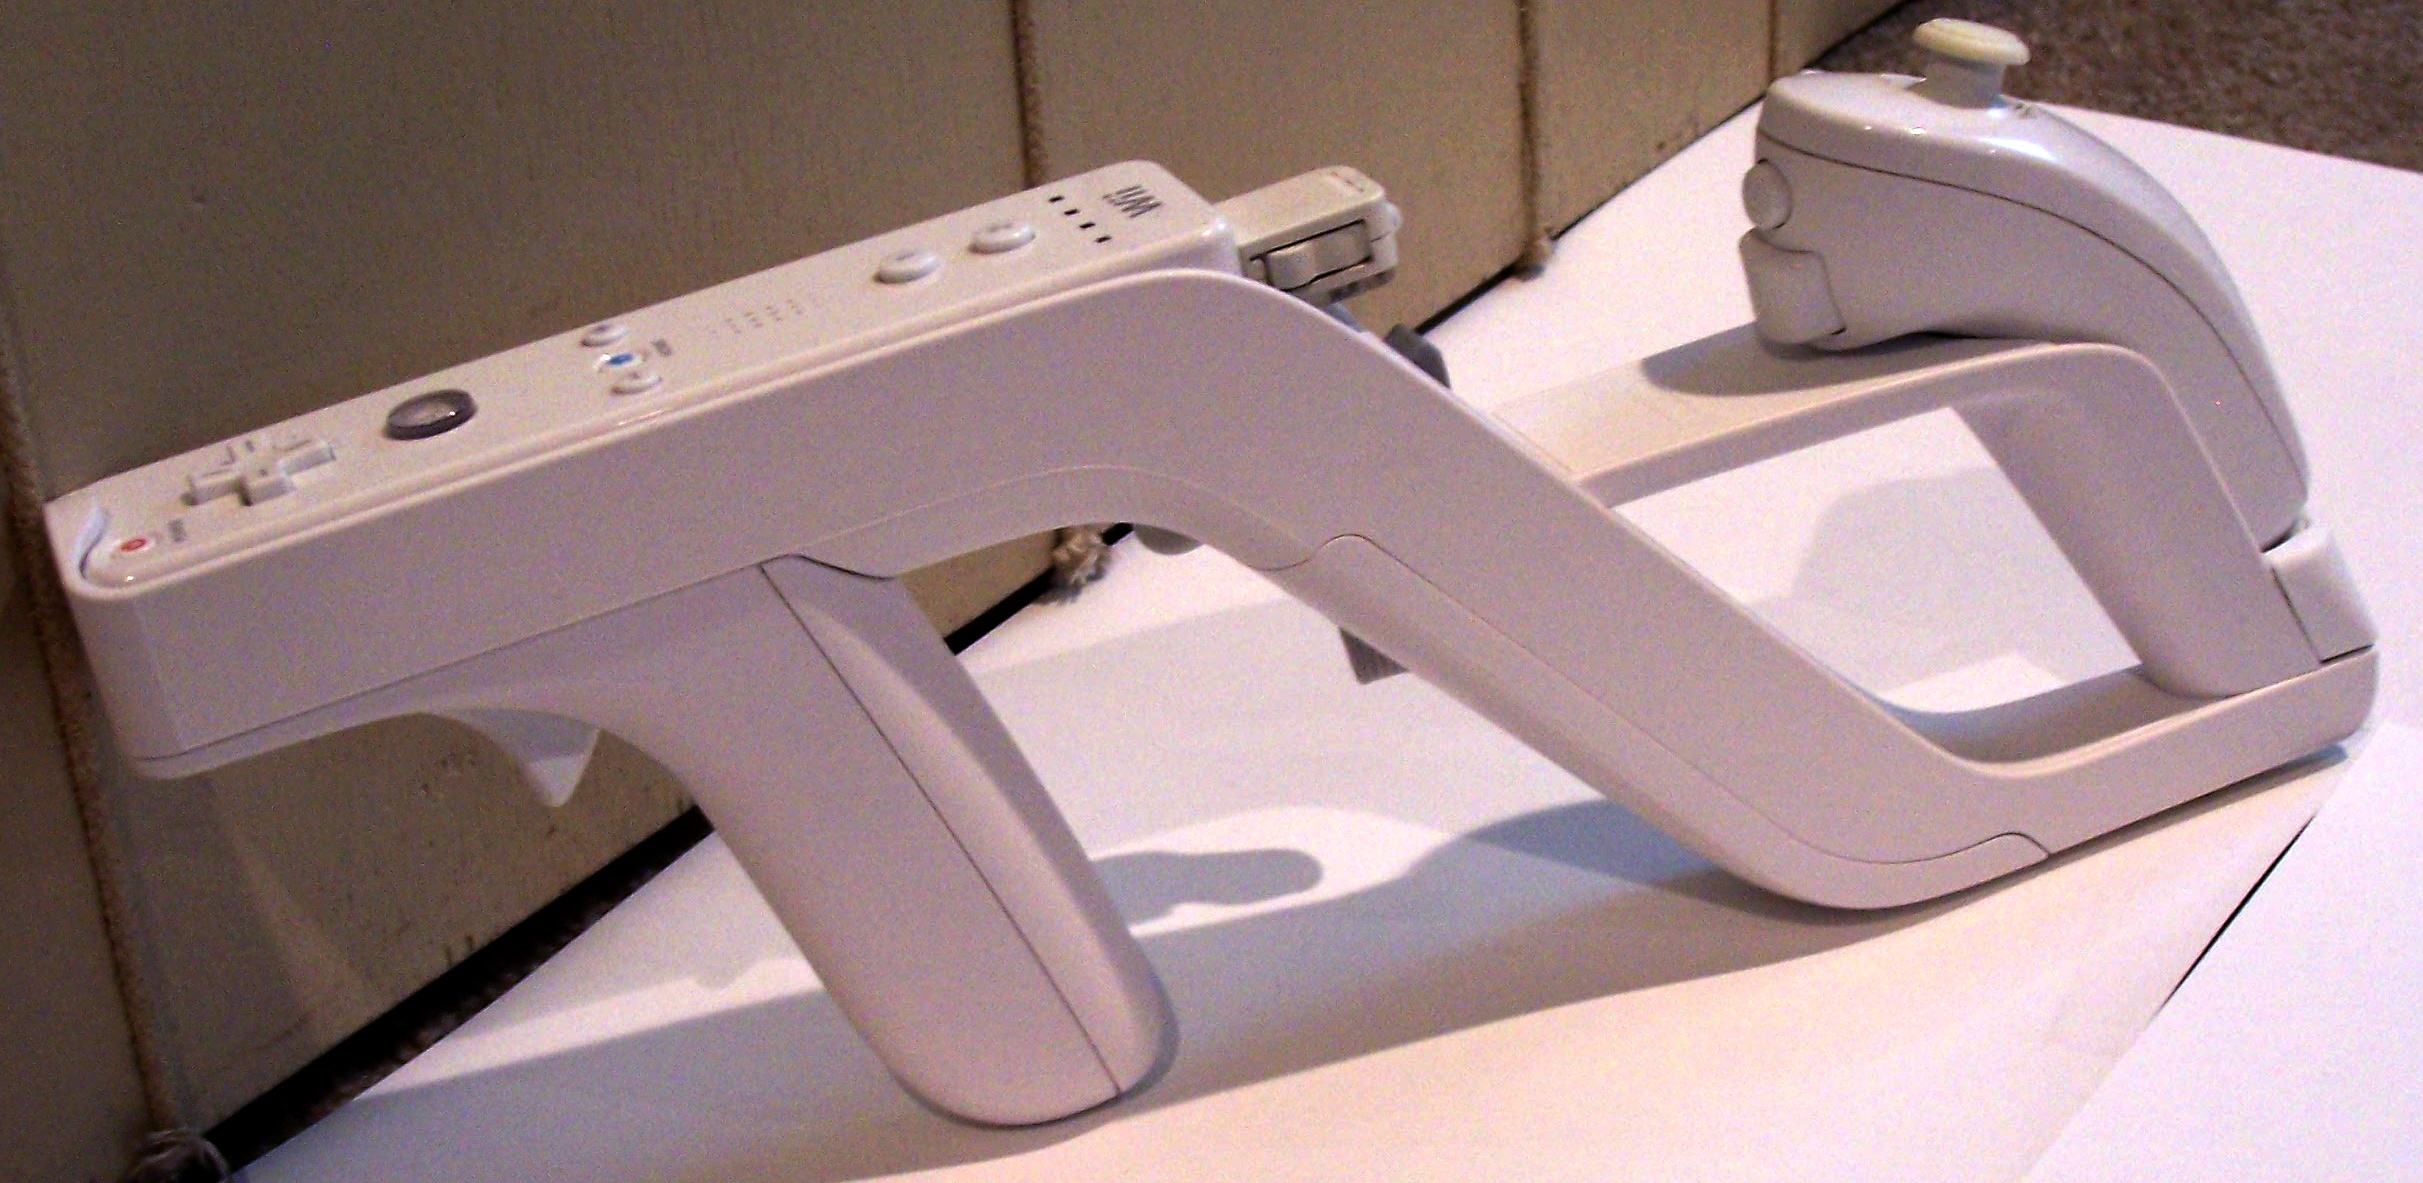 File:Wii Zapper-2009-03-12.jpg - Wikimedia Commons